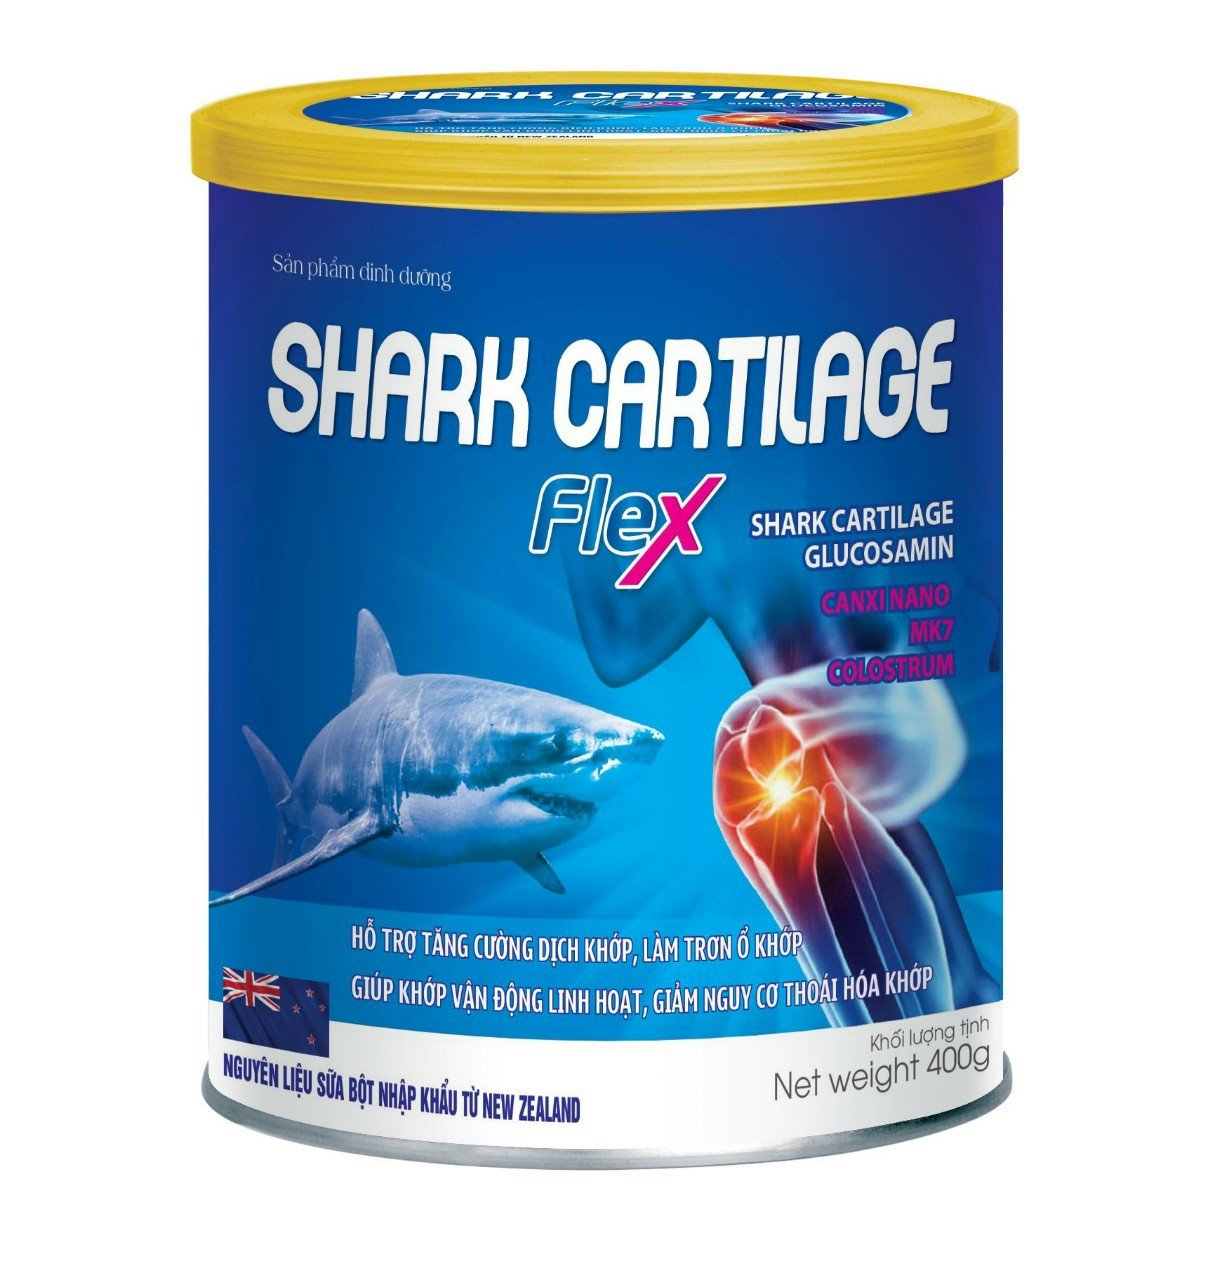 Sữa Bột Shark Cartilage Flex với thành phần sụn vi cá mập glucosamine canxi nano MK7 Hỗ trợ tăng cường dịch khớp làm trơn ổ khớp giảm đau nhức xương khớp giúp khớp vận động linh hoạt- hộp 400g